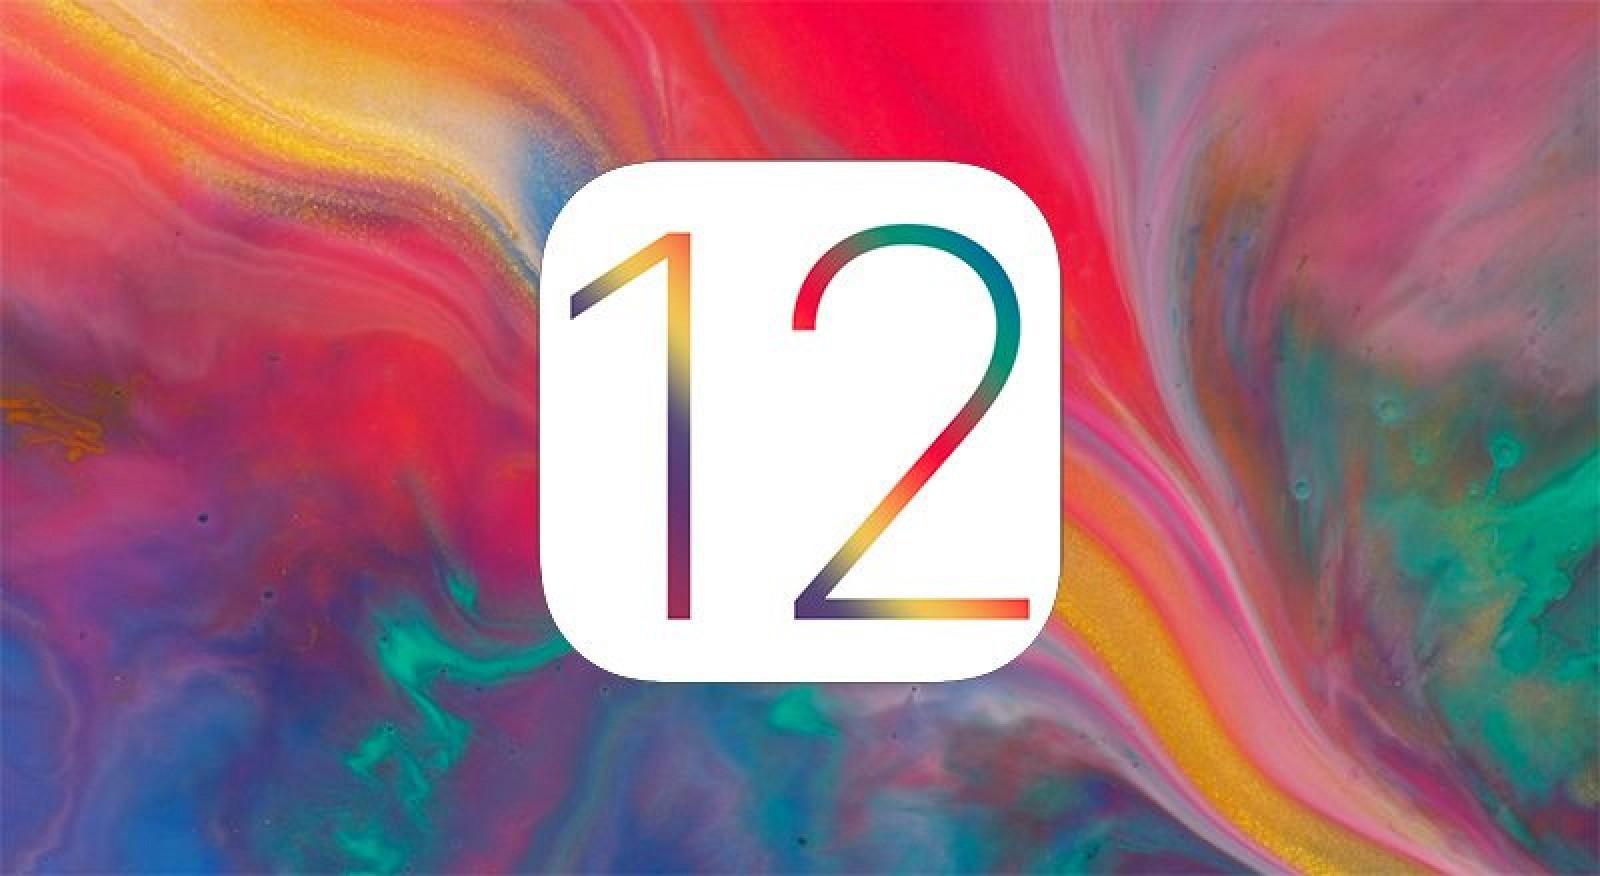 Tổng hợp iOS 12 - Người dùng đang mong chờ những gì sẽ xuất hiện?